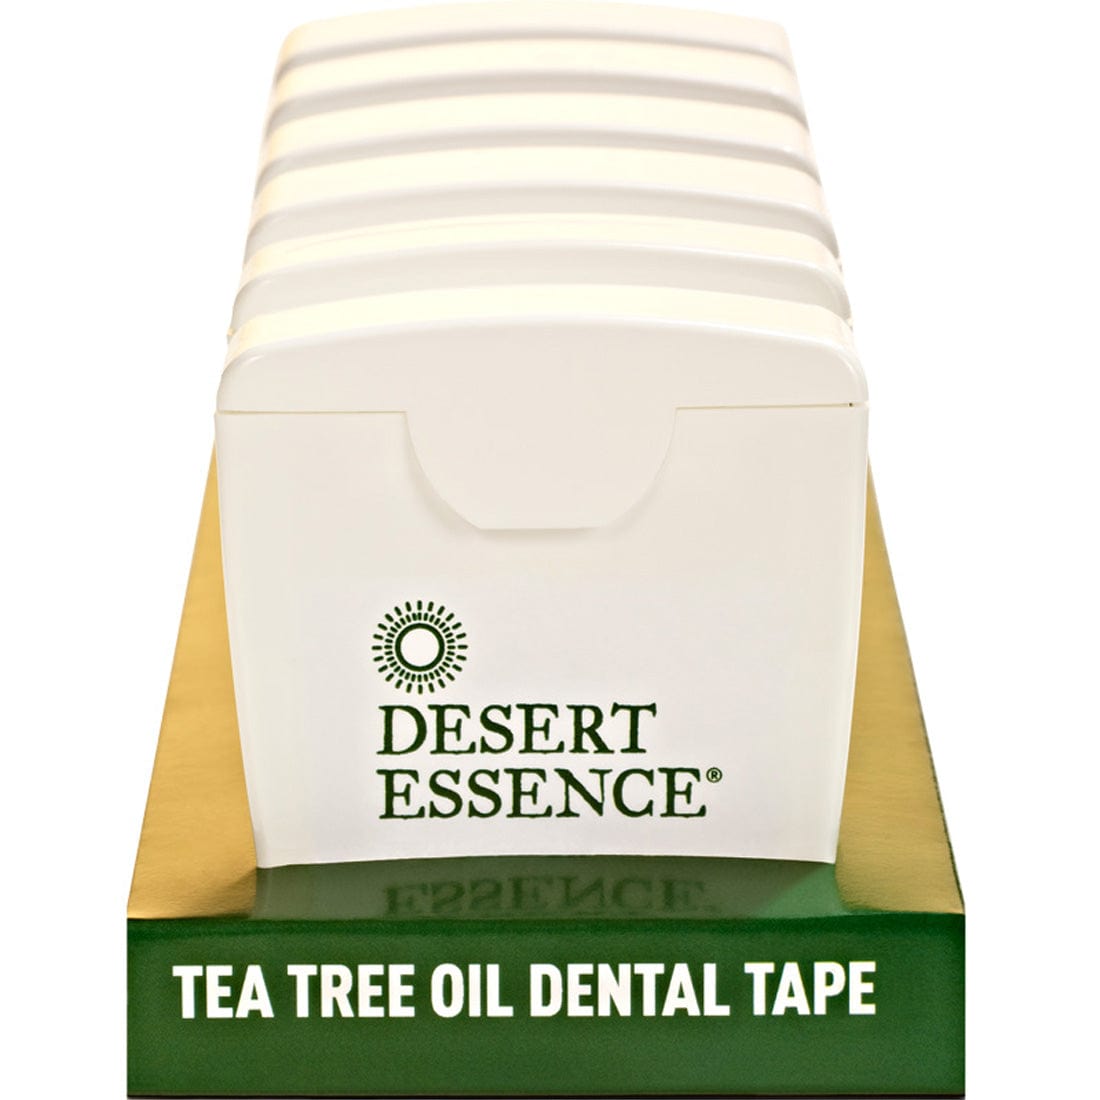 Desert Essence Tea Tree Oil Dental Tape, Case of 6 x 27m